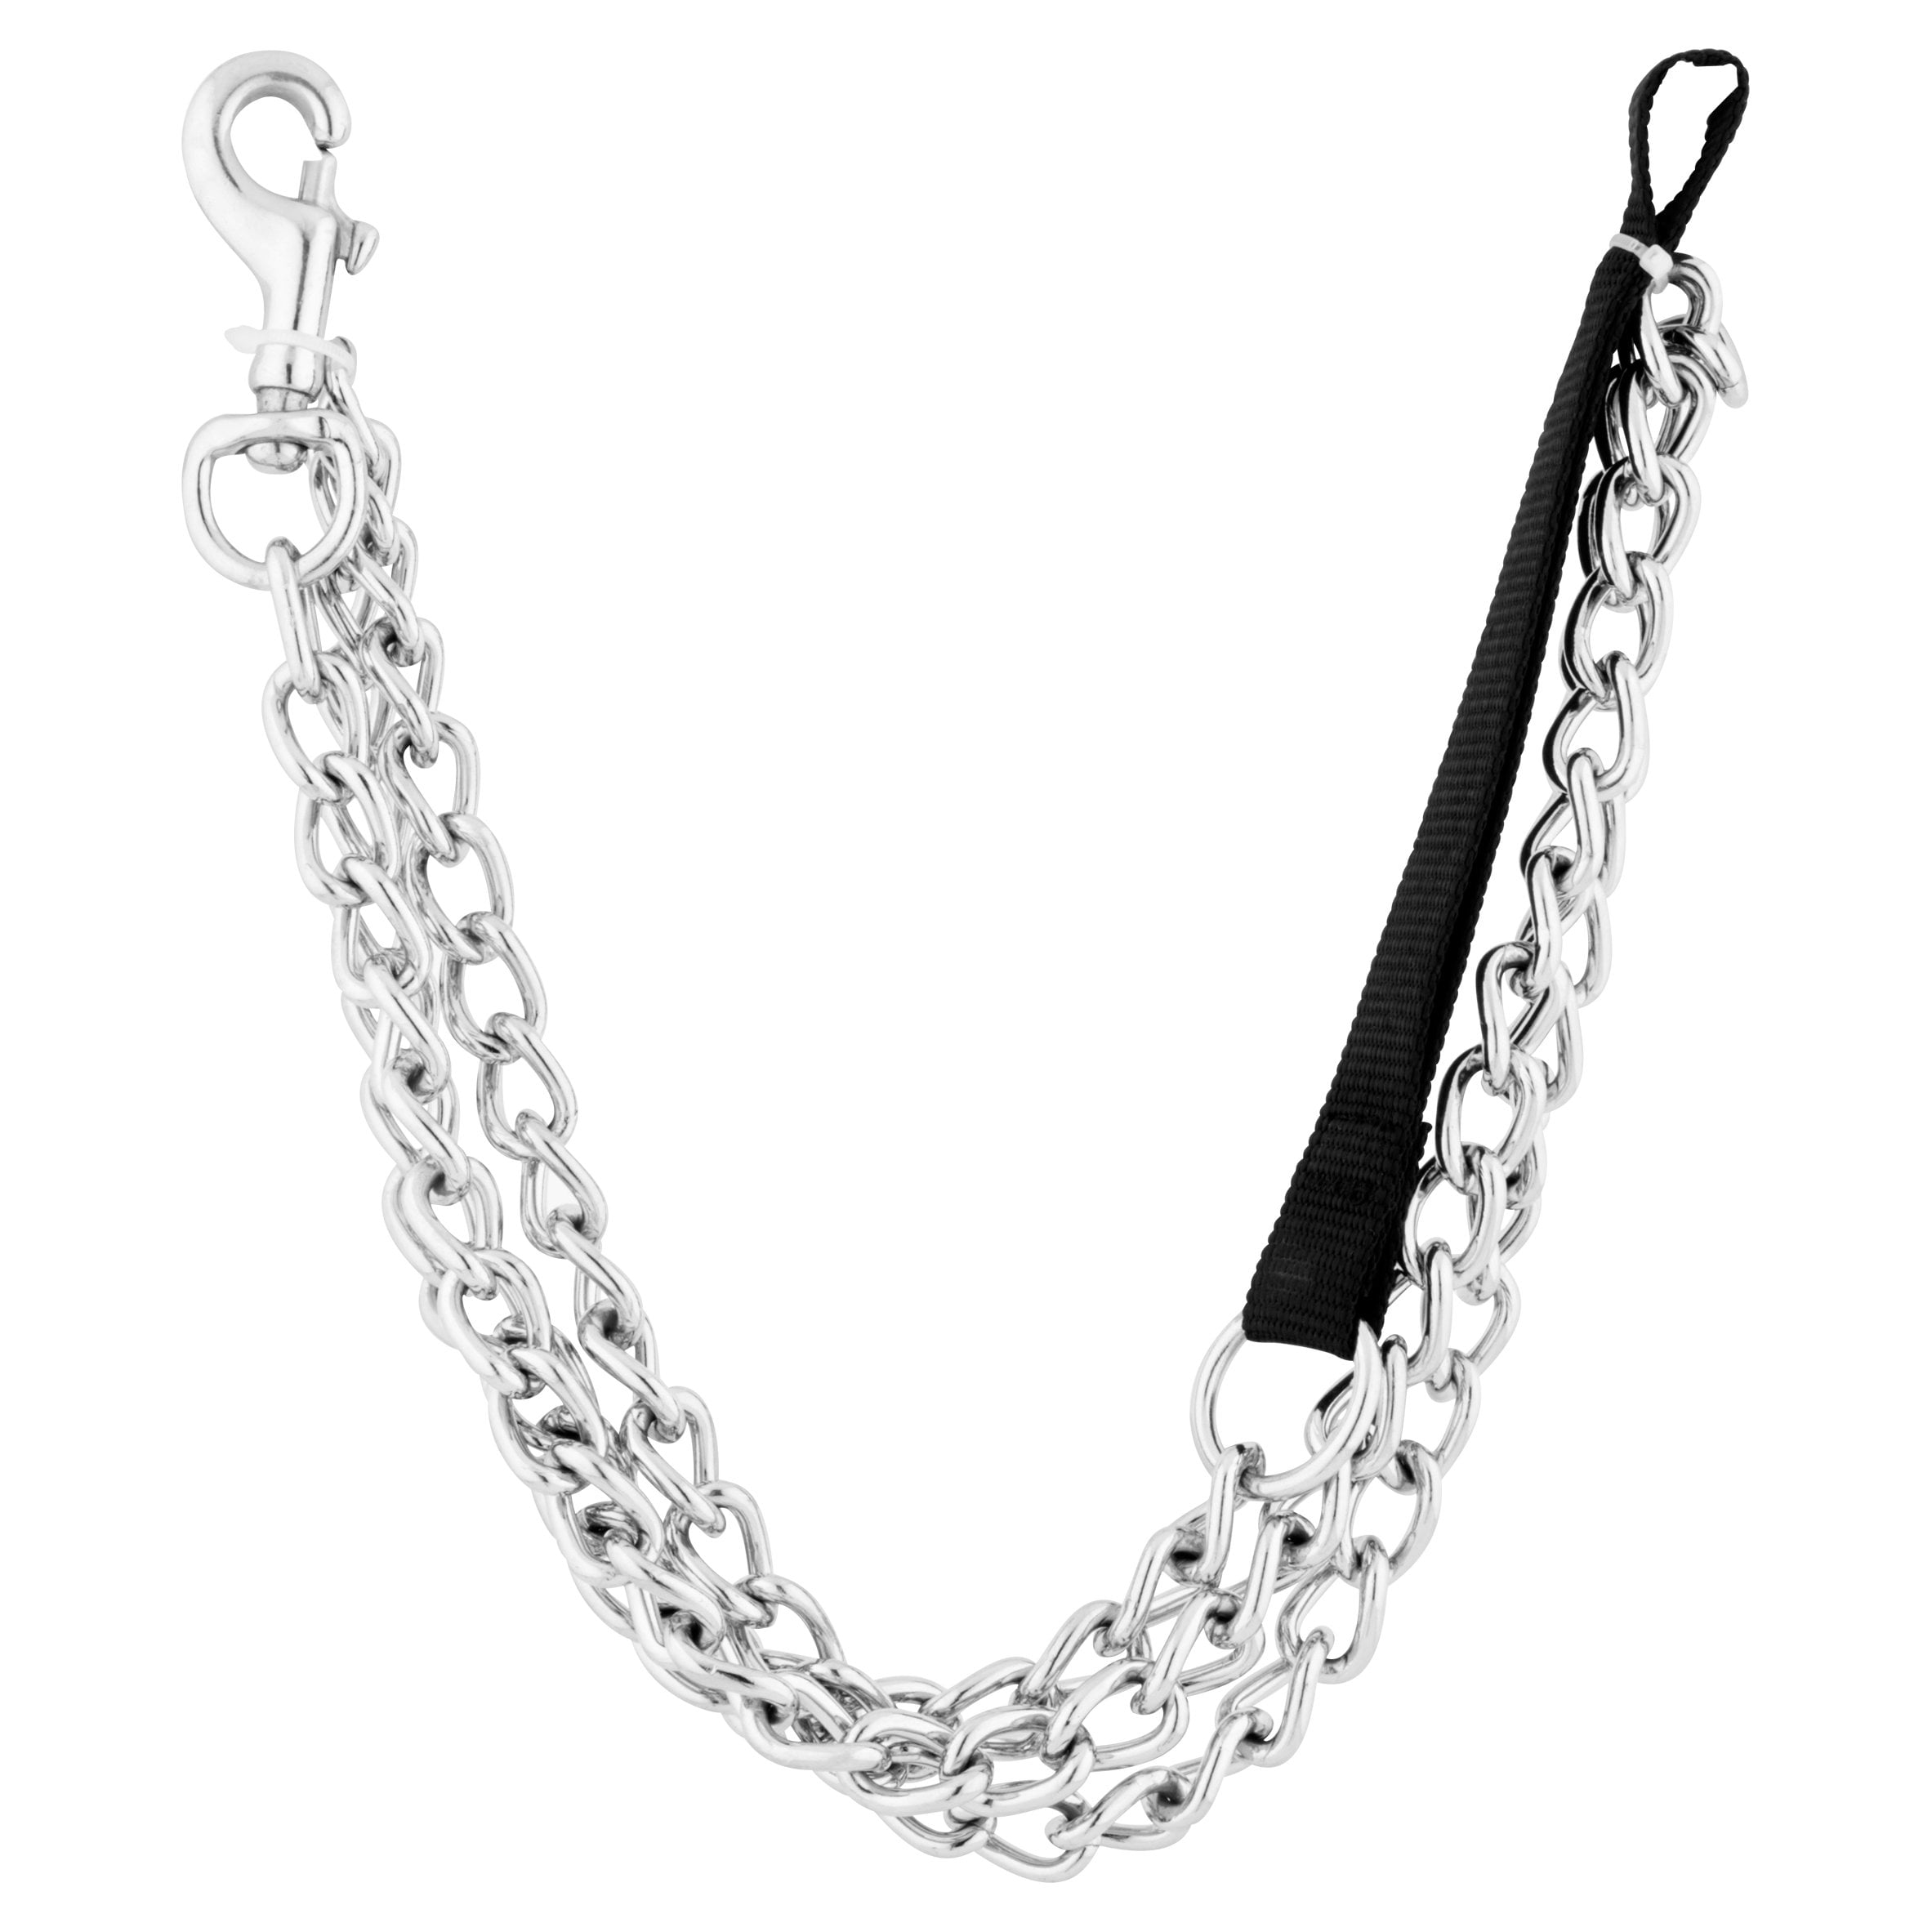 dog chain leash